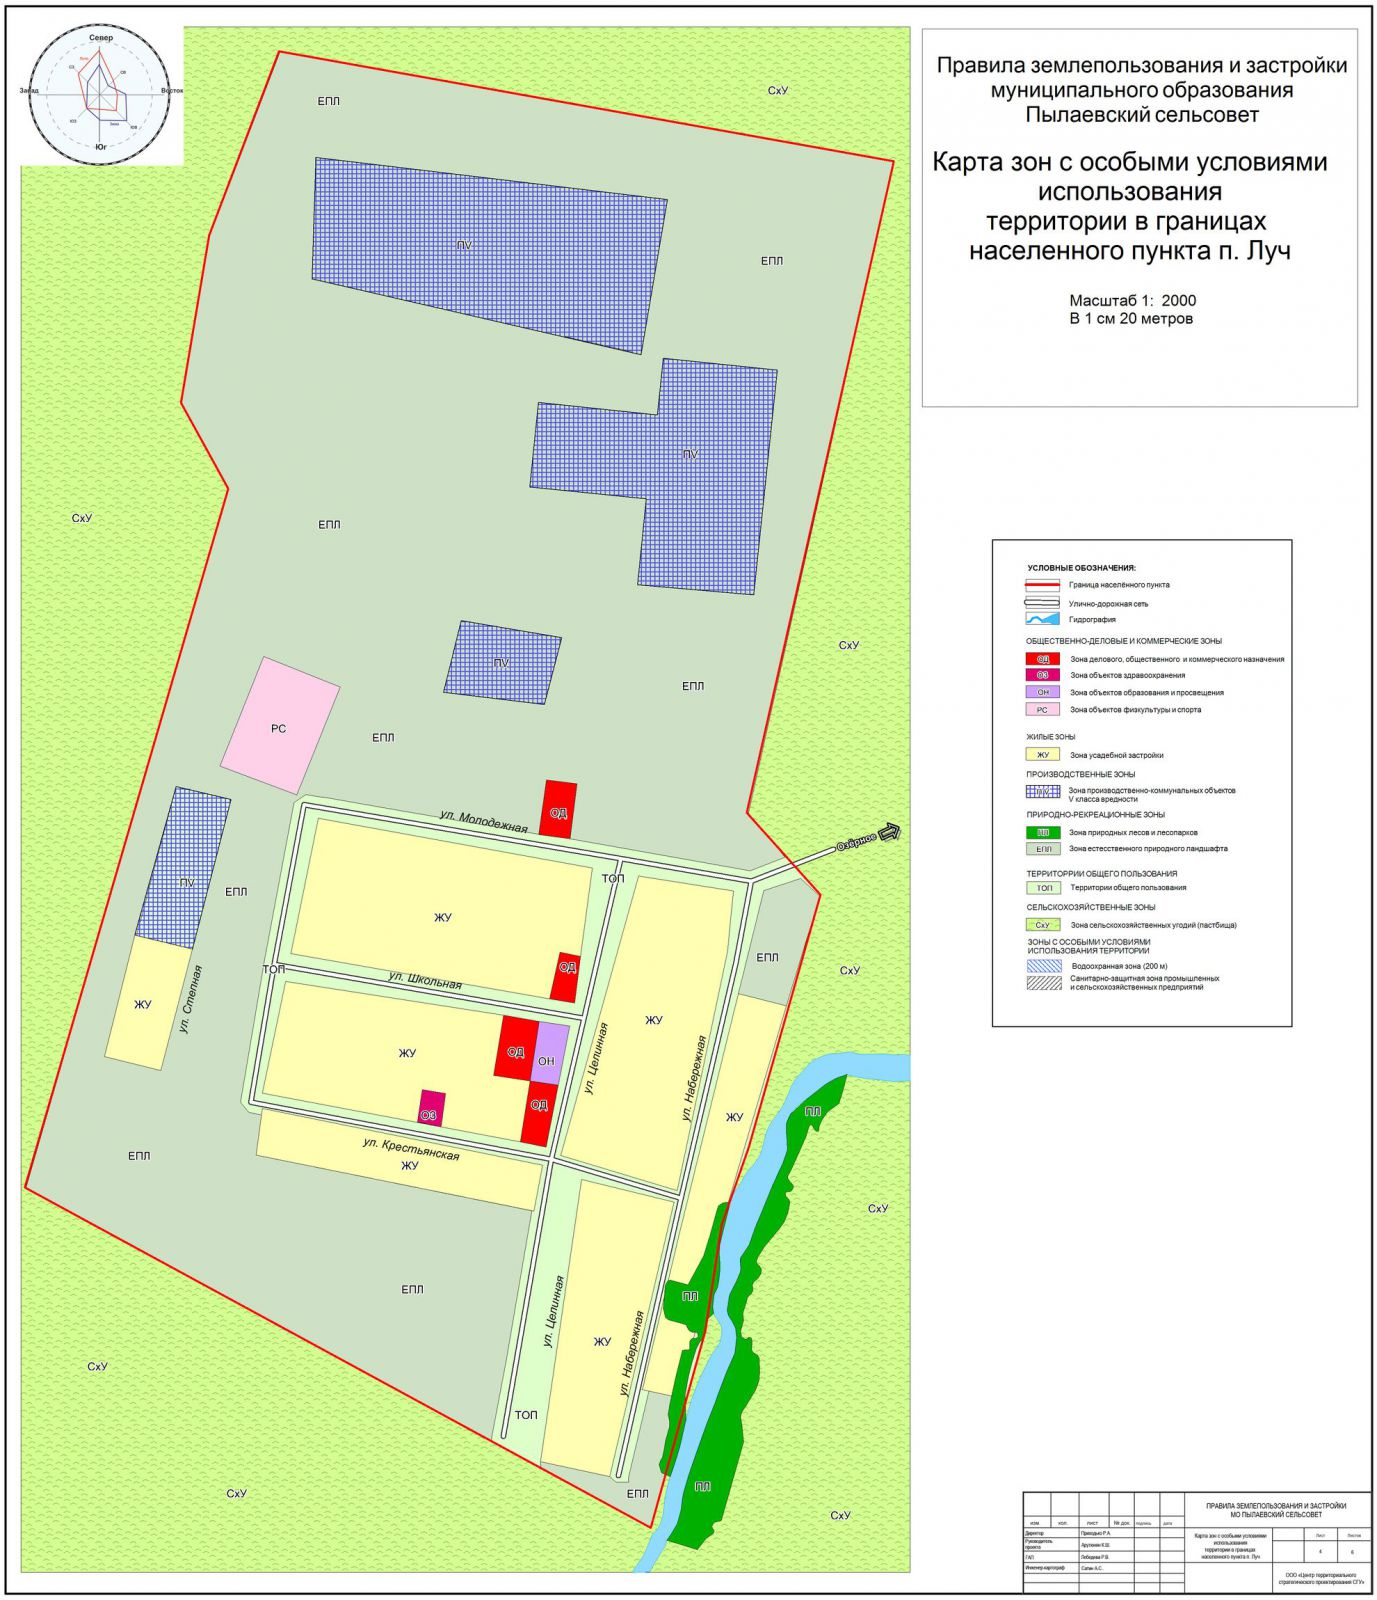  Карта зон с особыми условими использования территории в границах навеленного пункта п. Луч